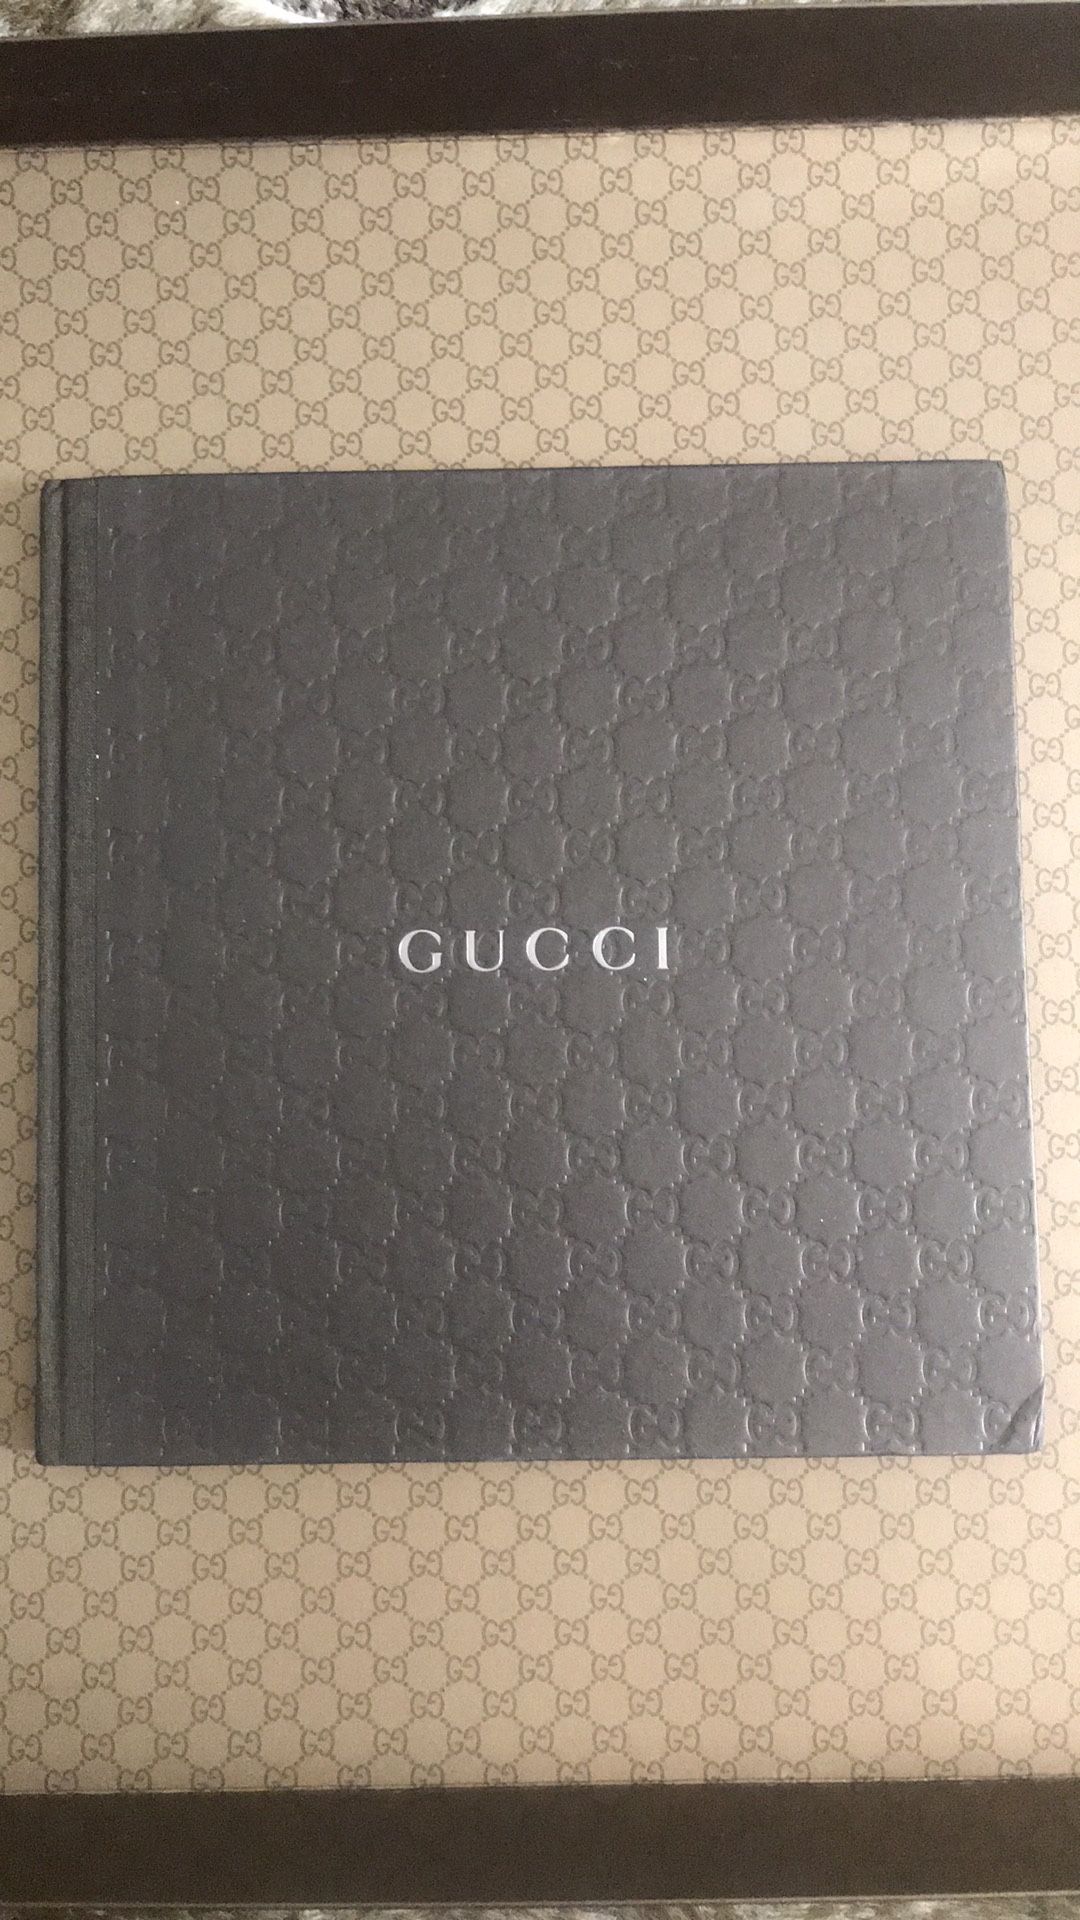 Gucci Mens Accessories Fall Winter 2010 Catalog